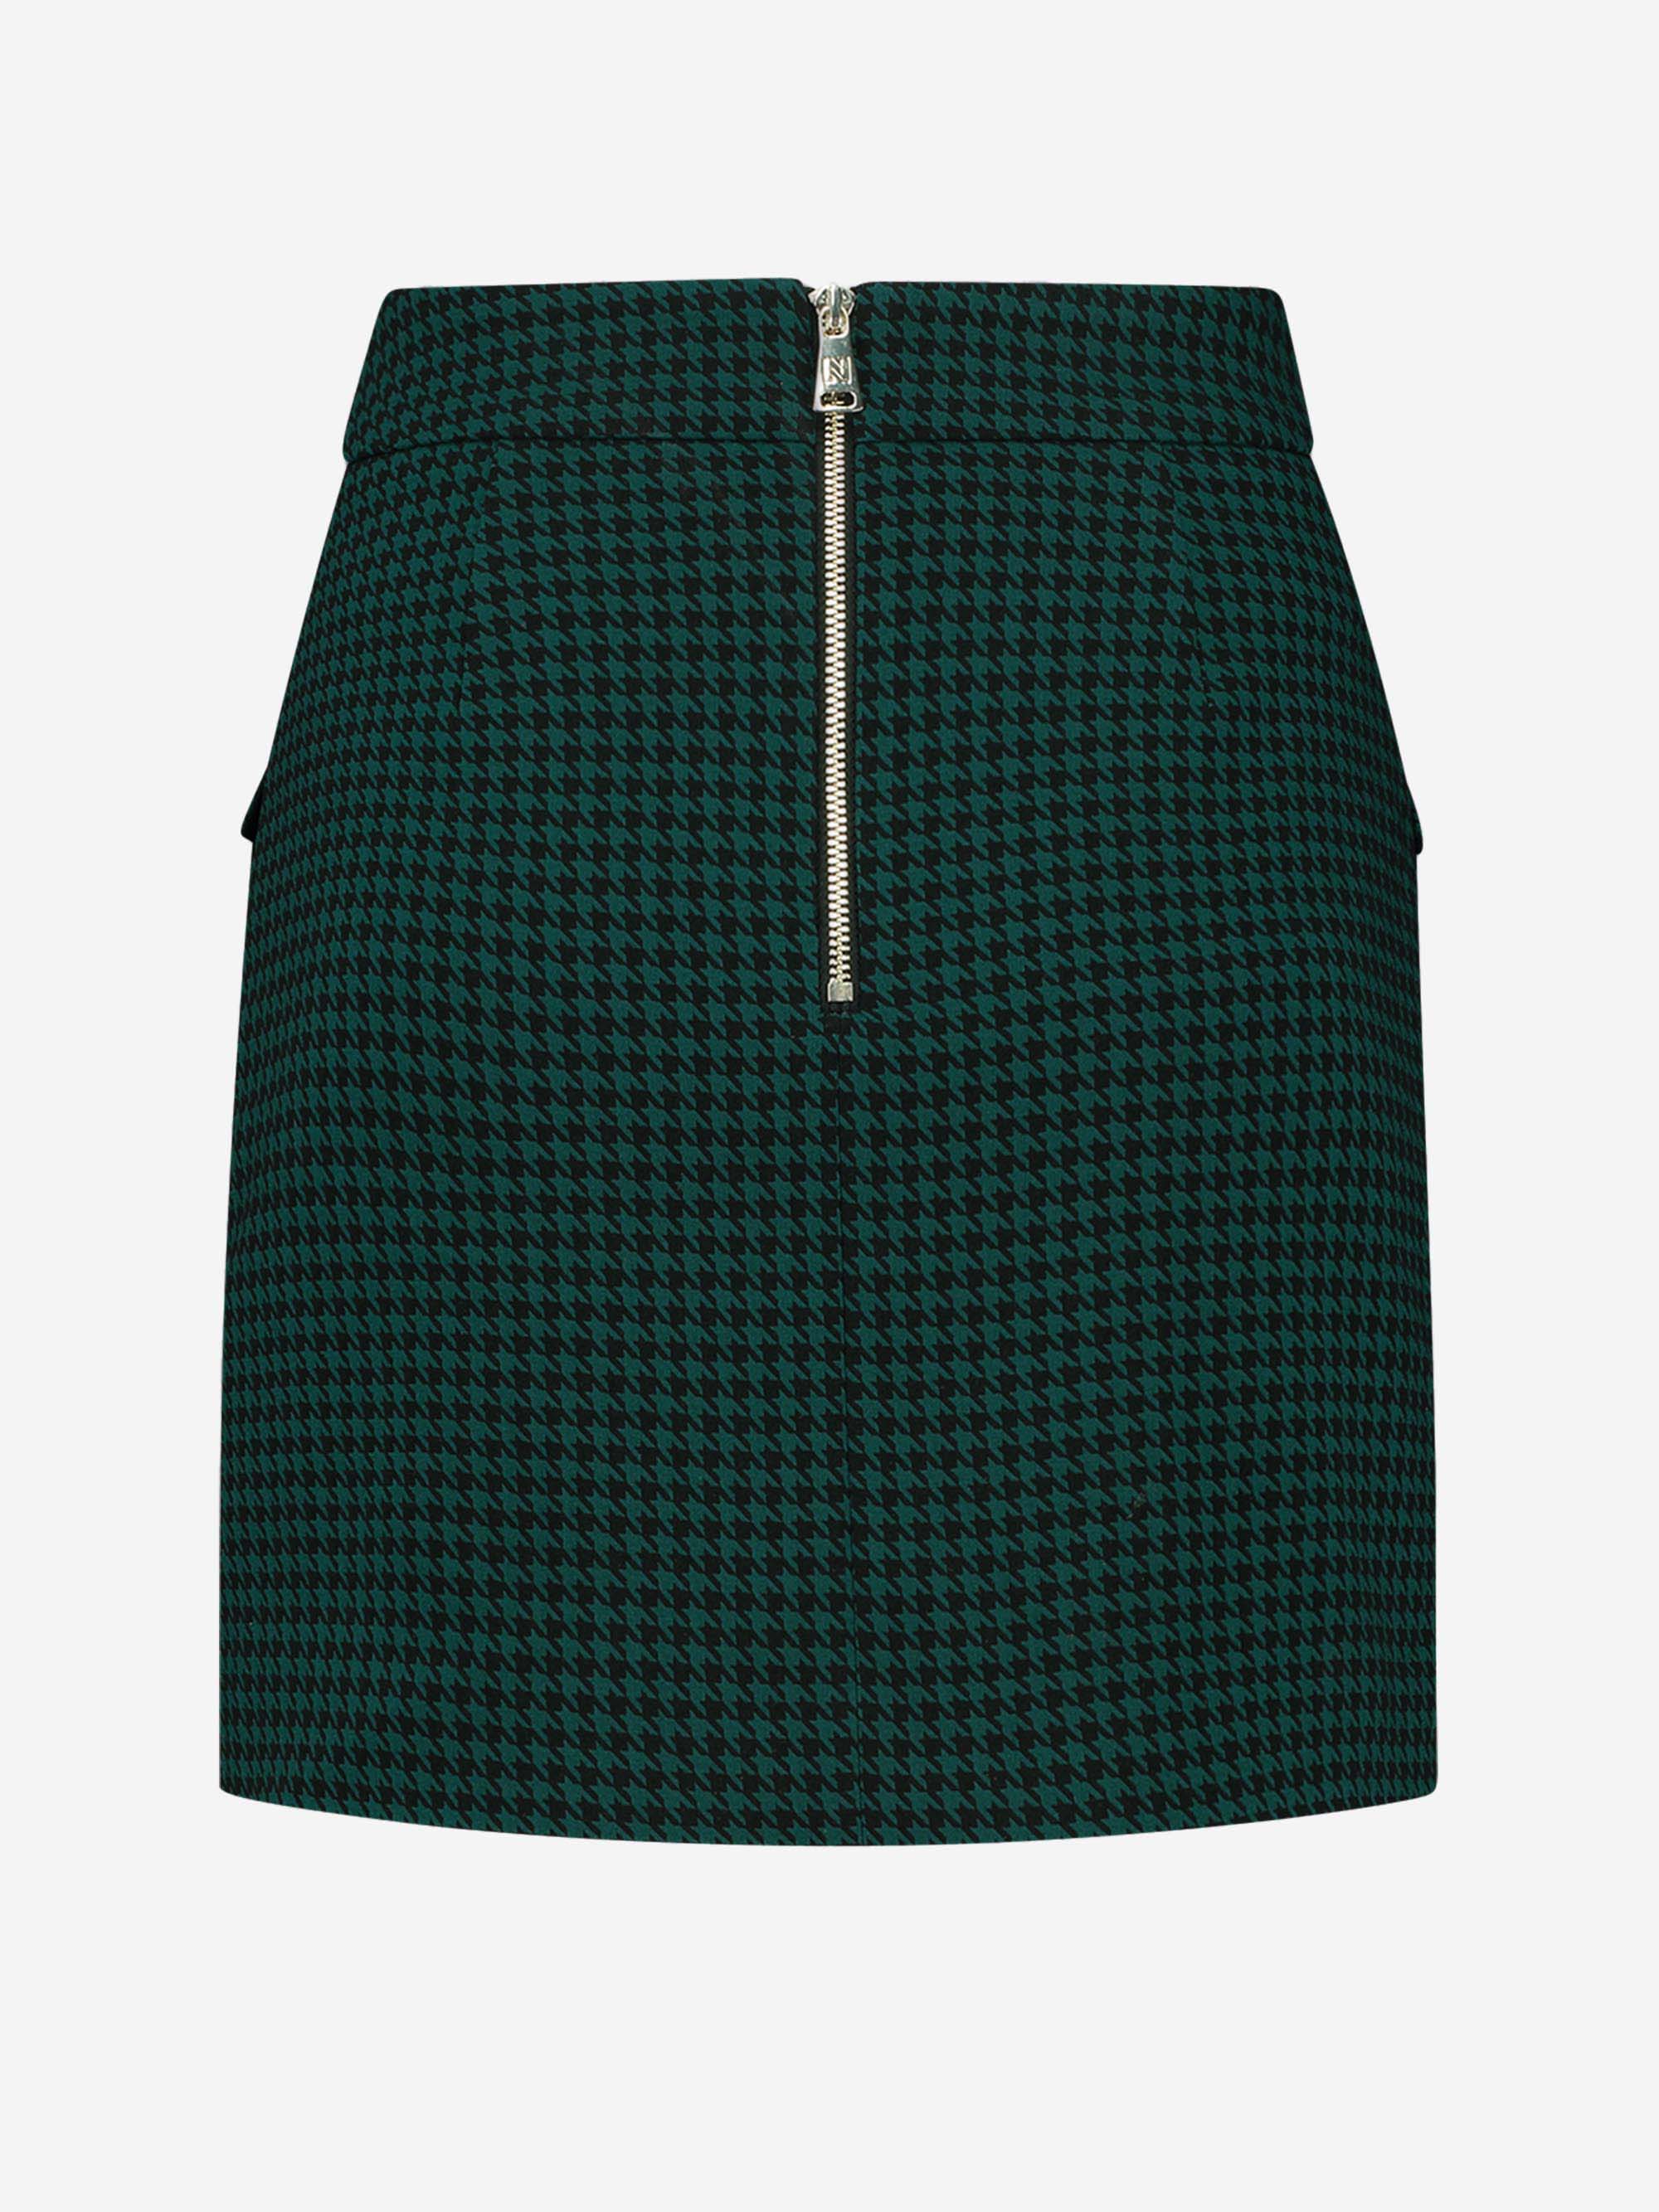 Nela Skirt